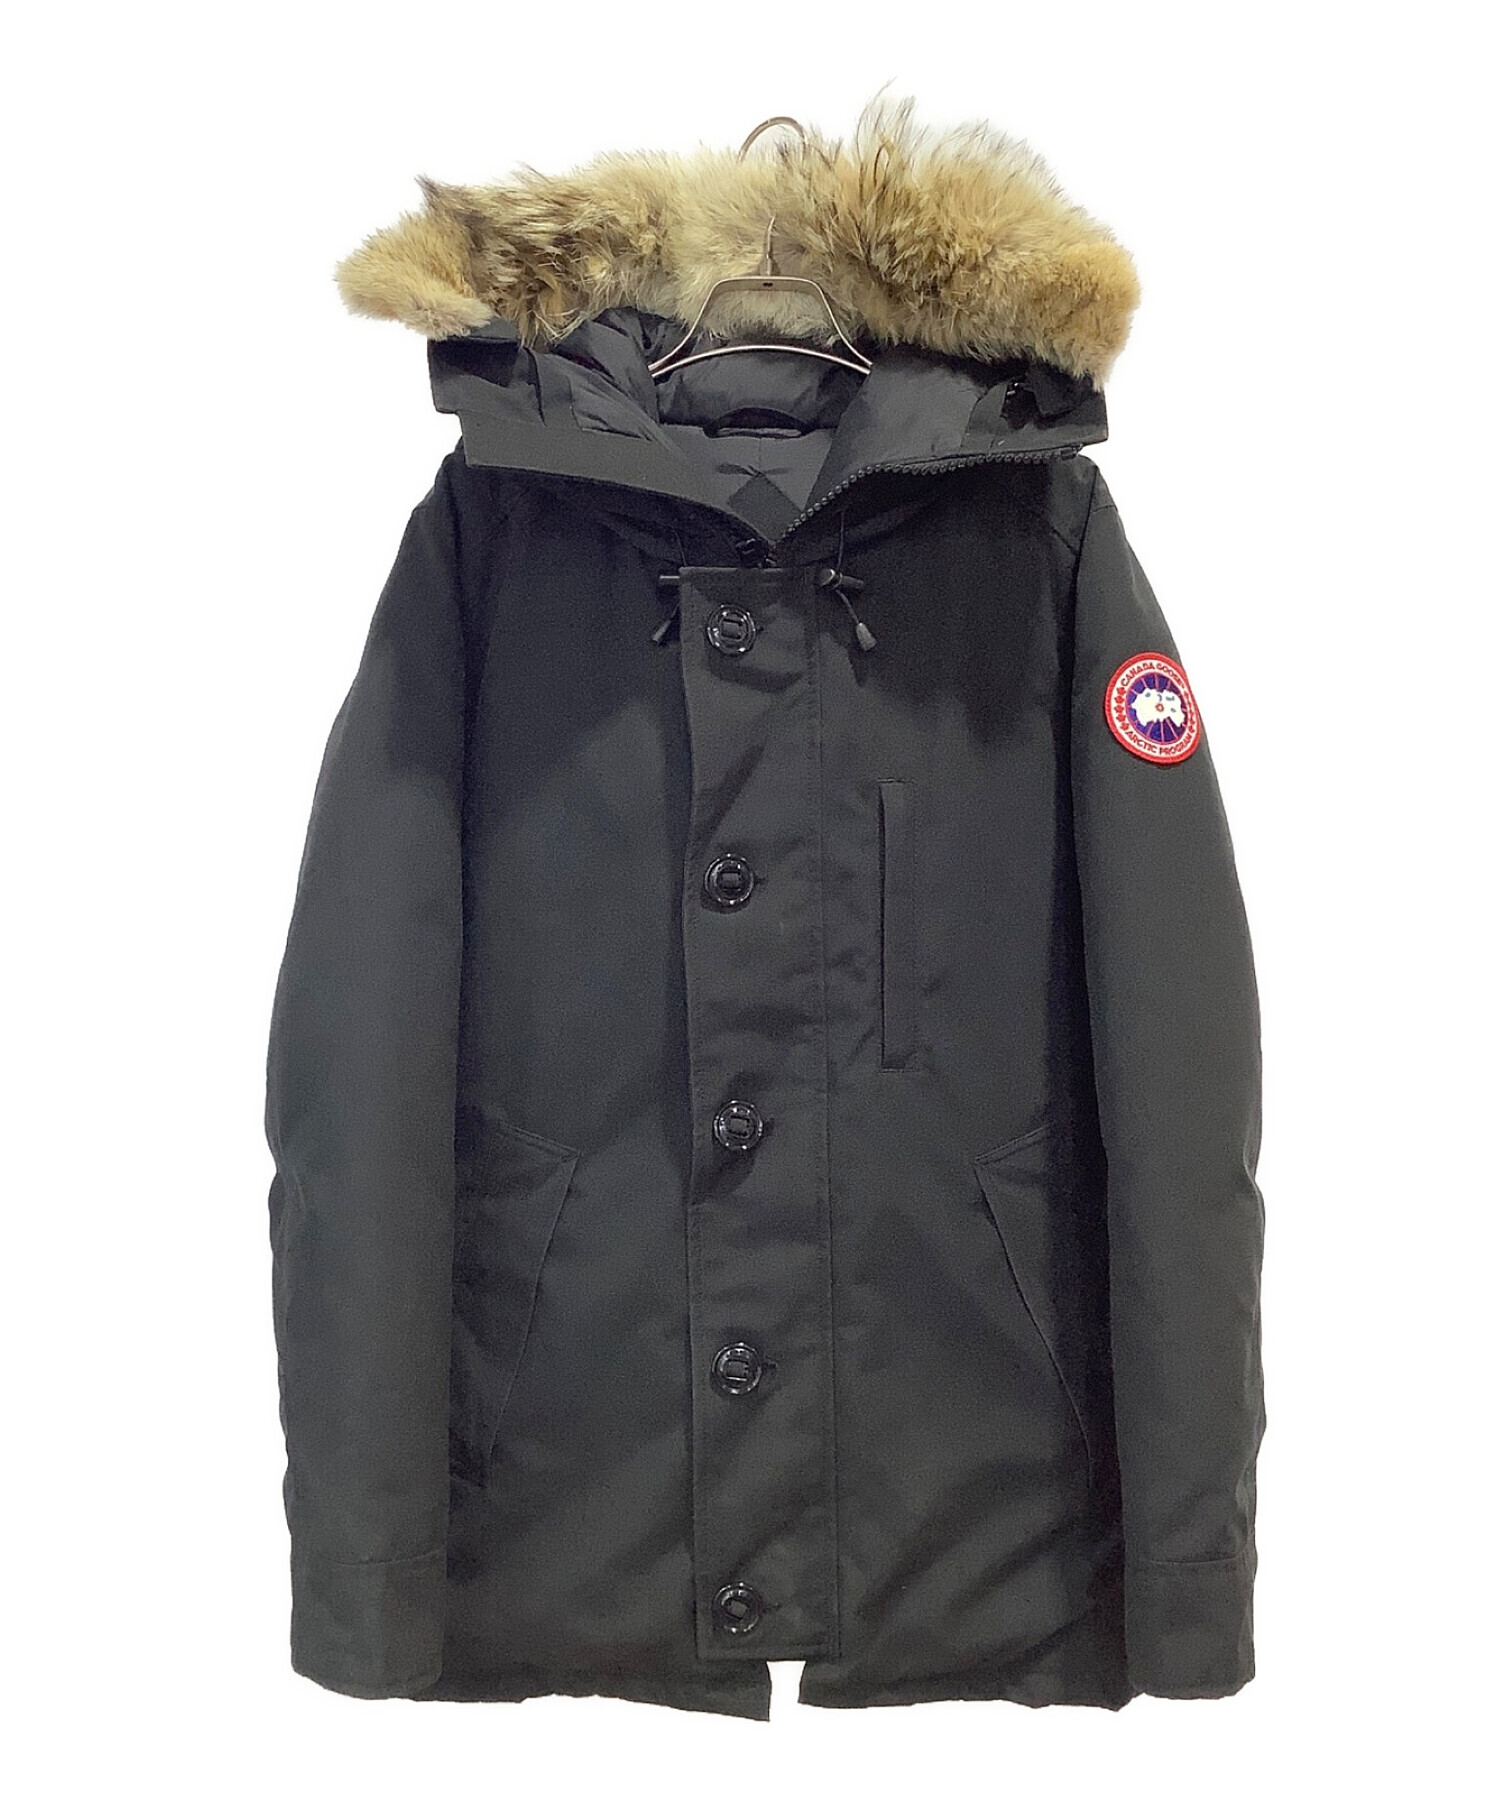 CANADA GOOSE (カナダグース) ダウンジャケット CHATEAU PARKA FF ブラック サイズ:S/P